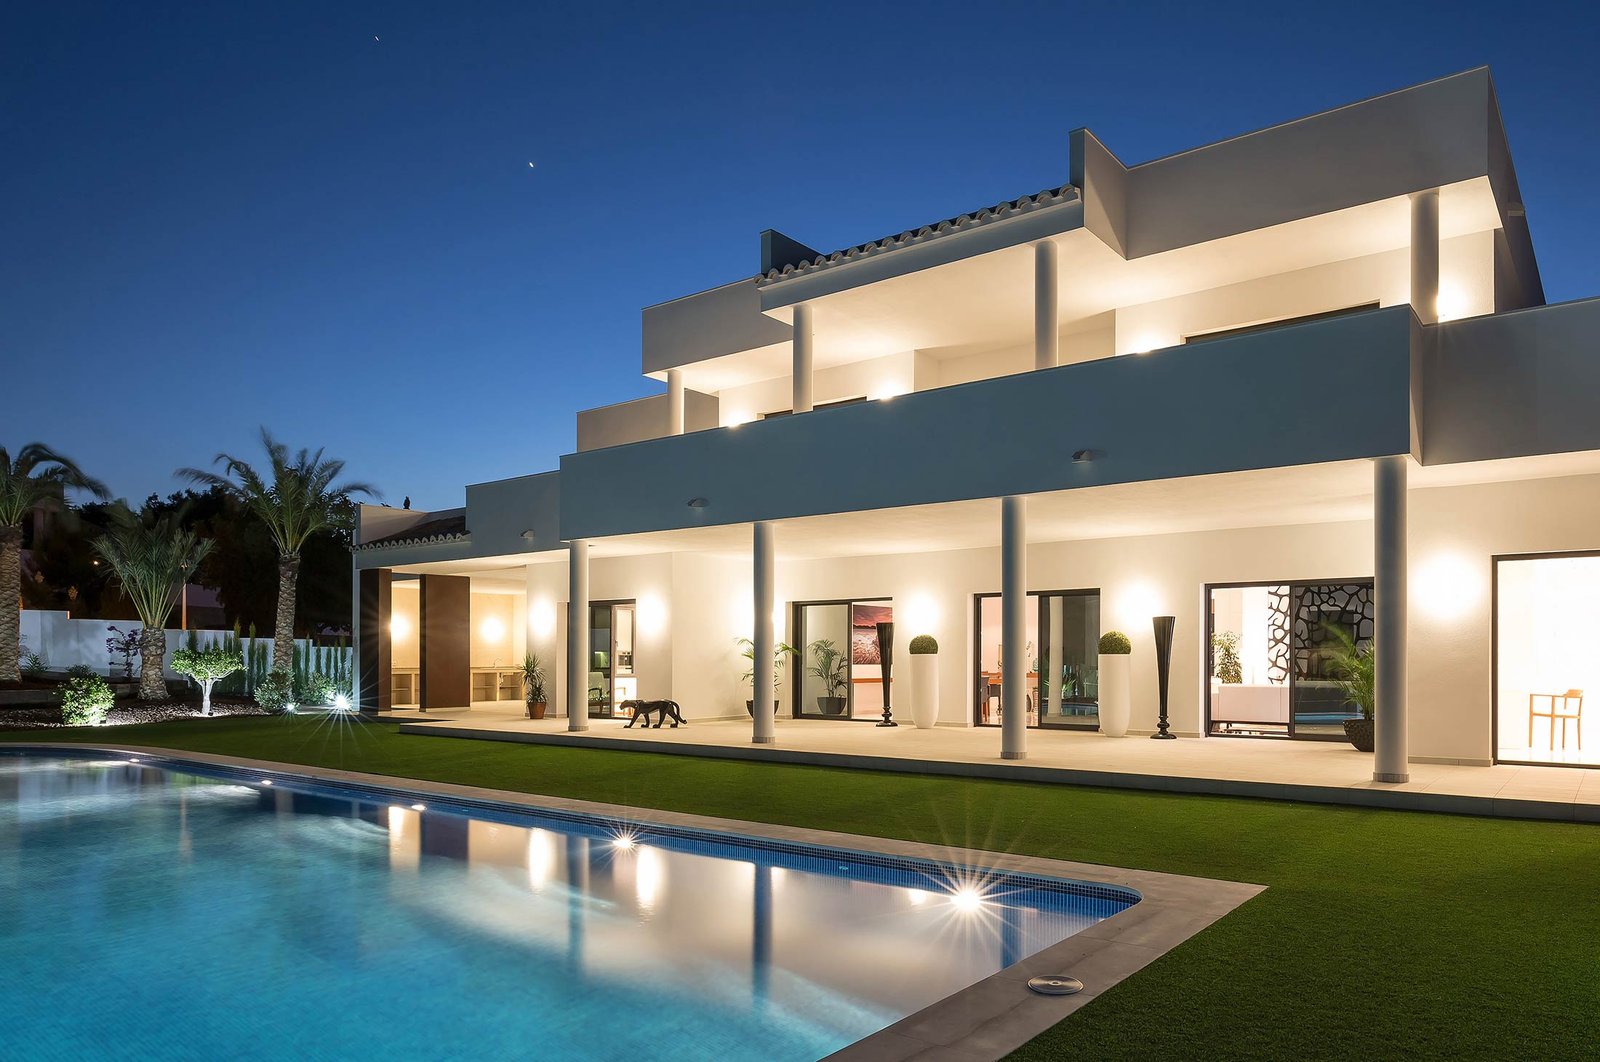 Diseño villa Valencia zona exterior con jardín y piscina iluminada por la noche.